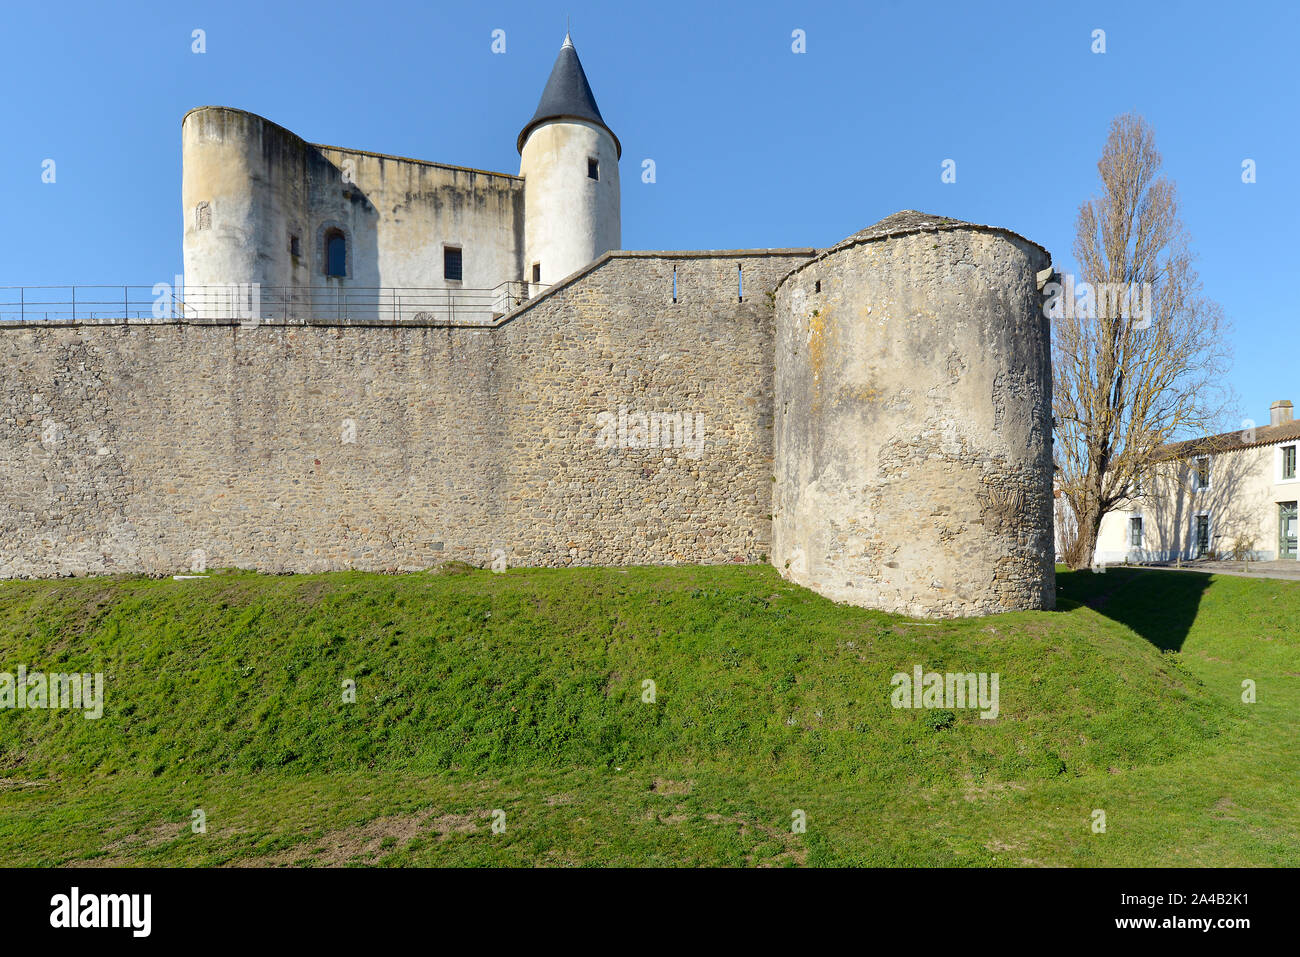 Il castello medievale di Noirmoutier en l'Ile nella regione Pays de la Loire in Francia occidentale Foto Stock